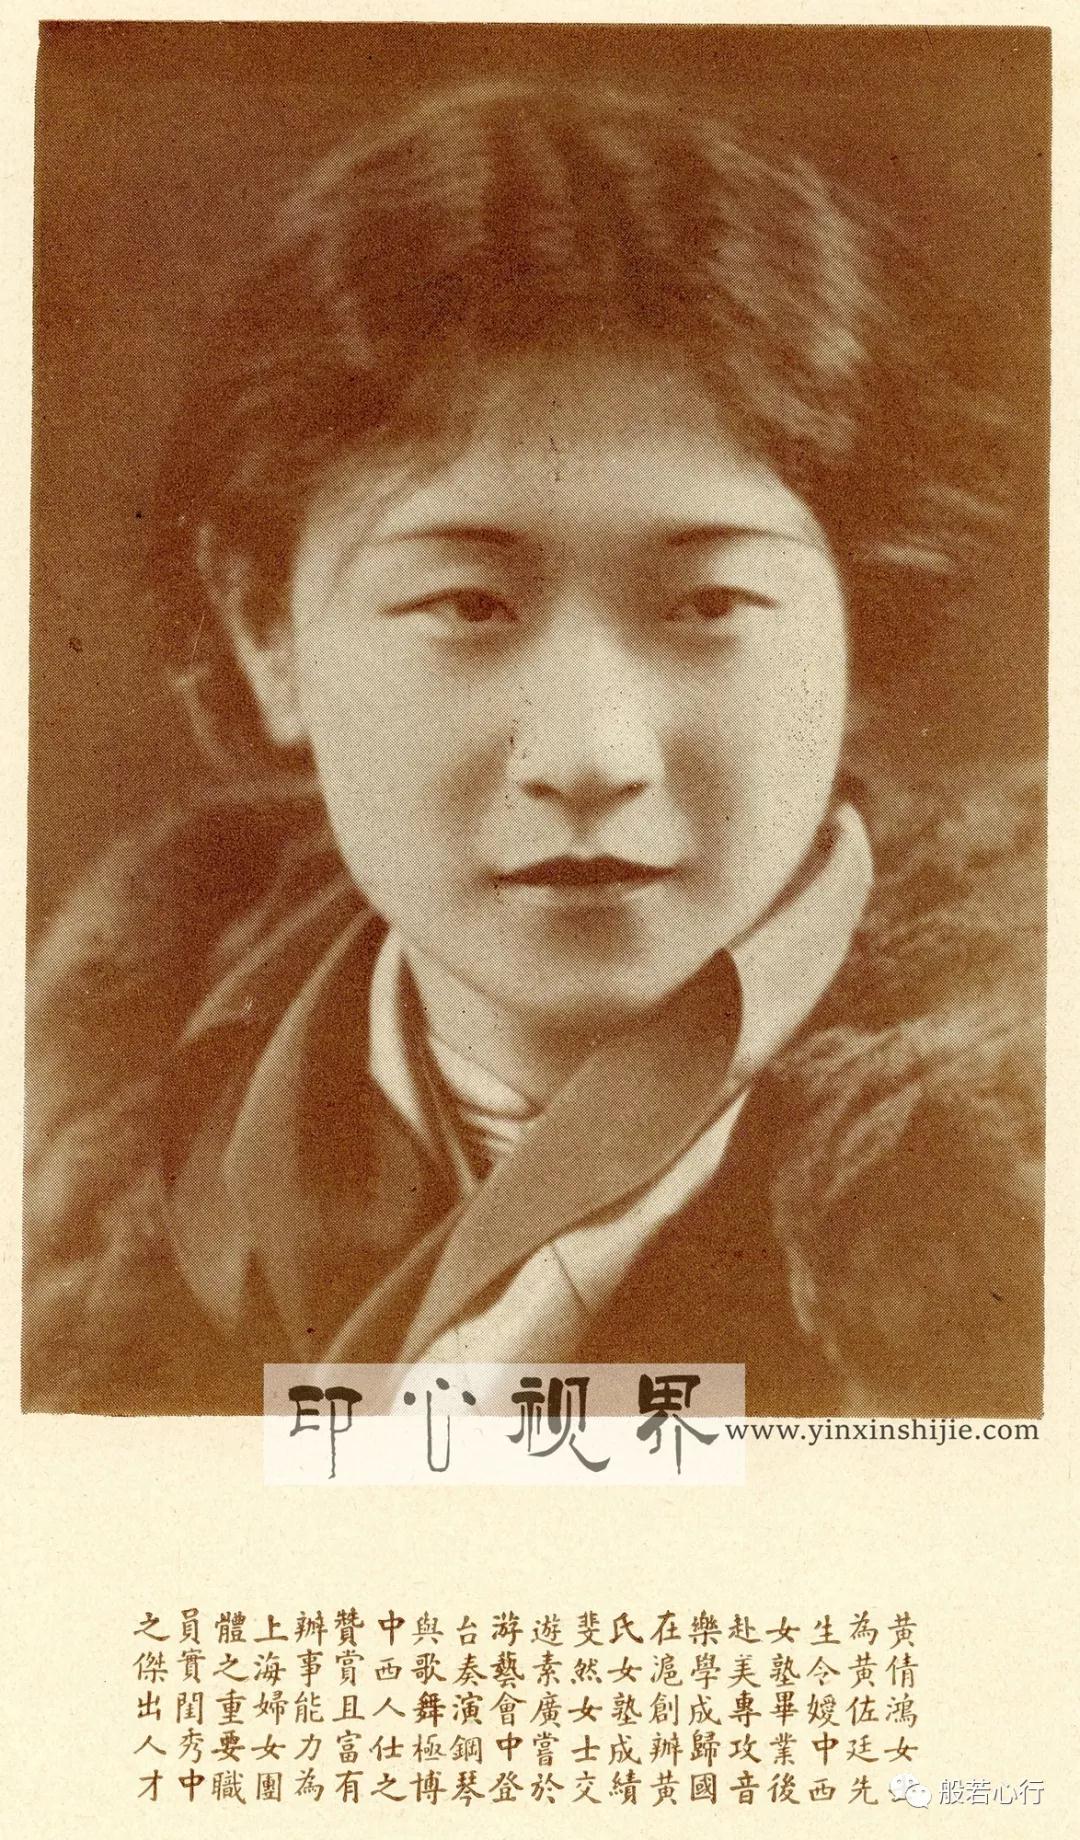 张爱玲就读的第一所学校创办者之一黄倩鸿女士--1930年《闺秀影集》